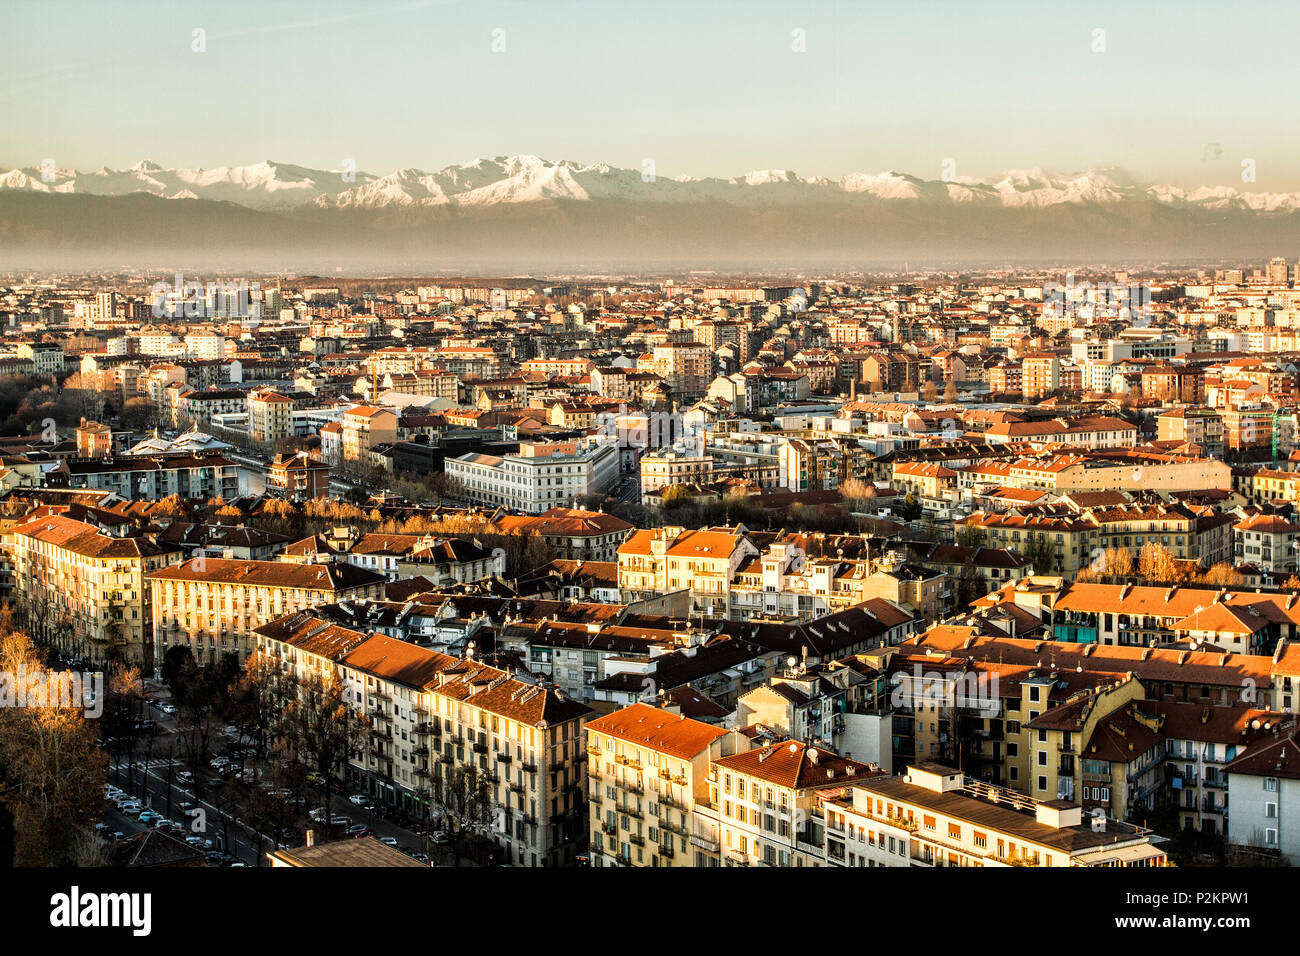 Vista della città di Torino dalla parte superiore della Mole Antonelliana, con sullo sfondo le Alpi. Torino Provincia di Torino, Italia. Foto Stock